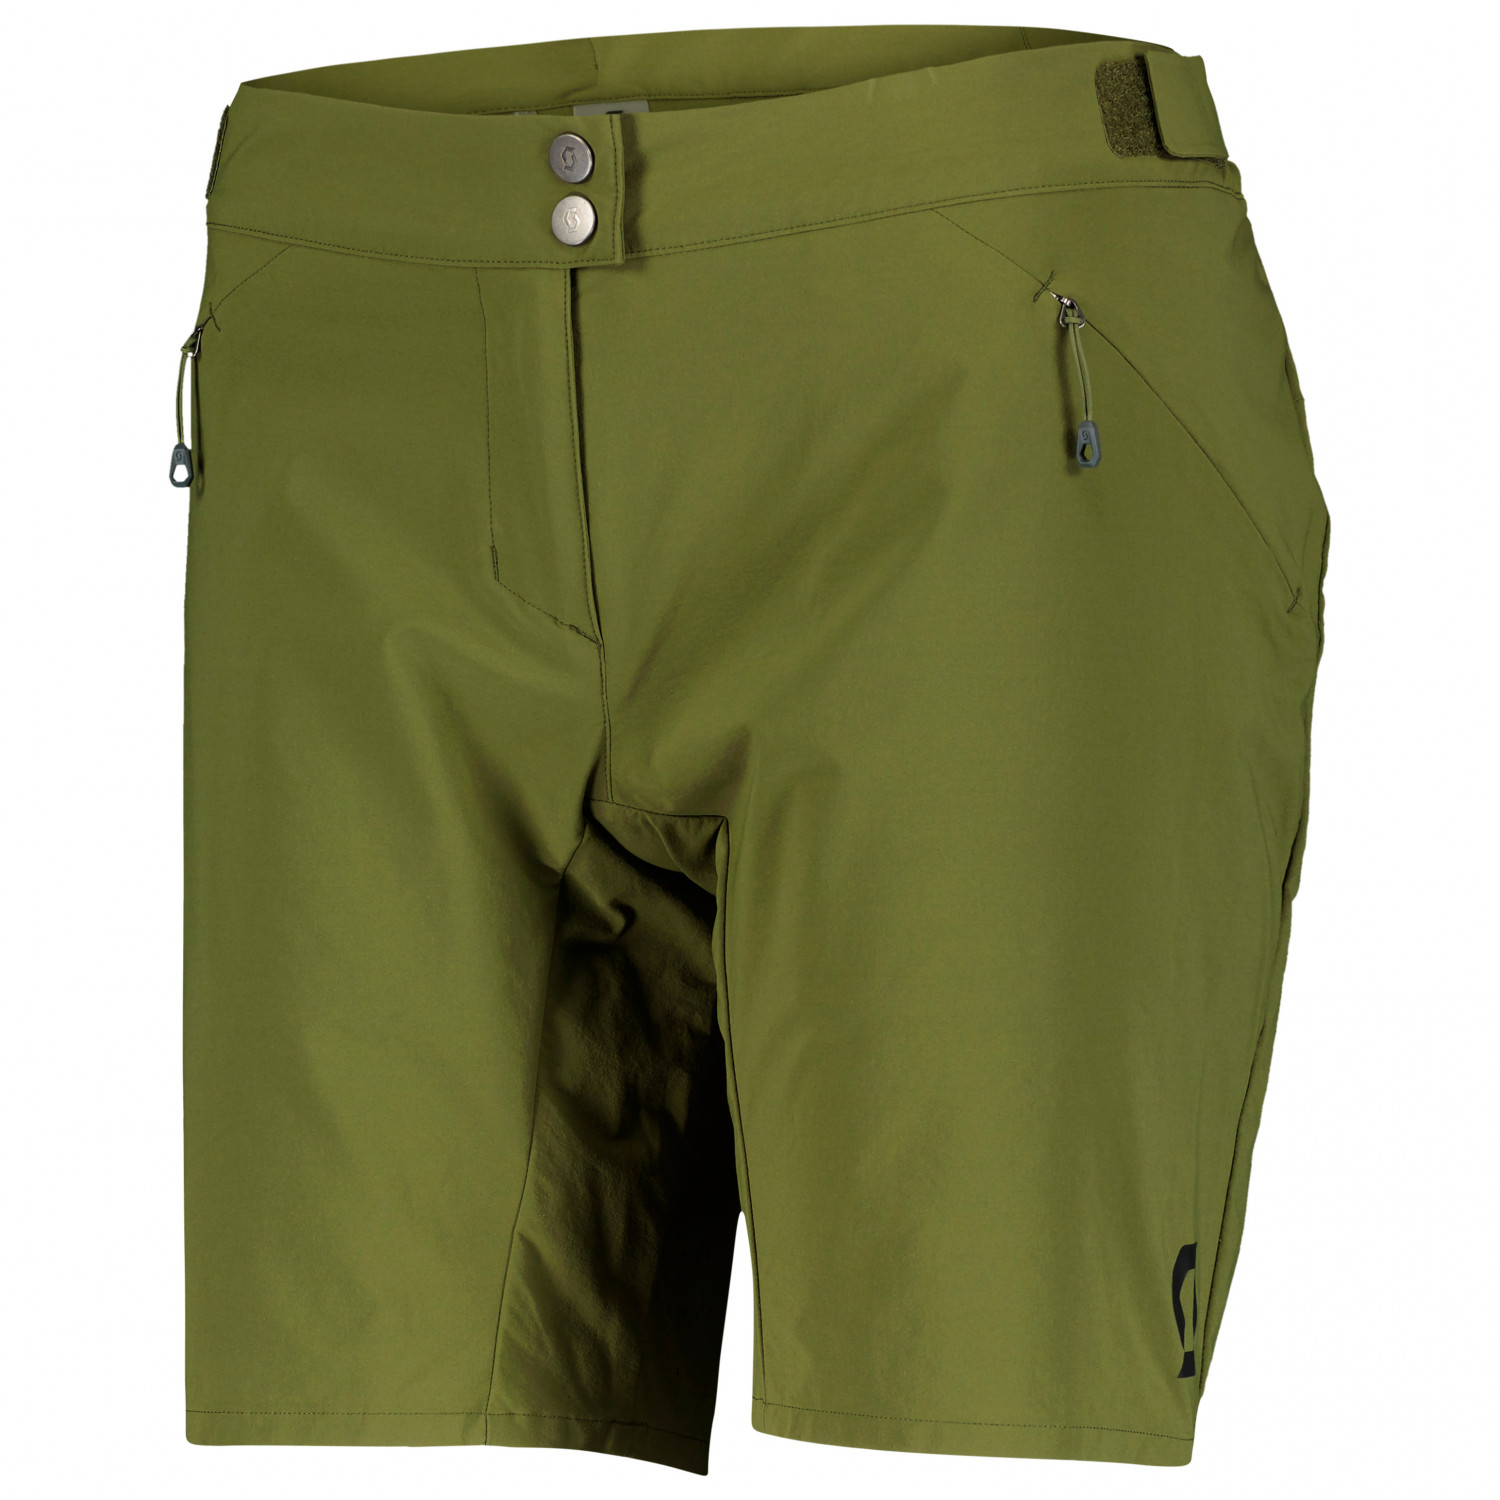 Велосипедные шорты Scott Women's Shorts Endurance Loose Fit with Pad, цвет Fir Green пазл origami лесные тропинки с плакатом 02854 35 дет